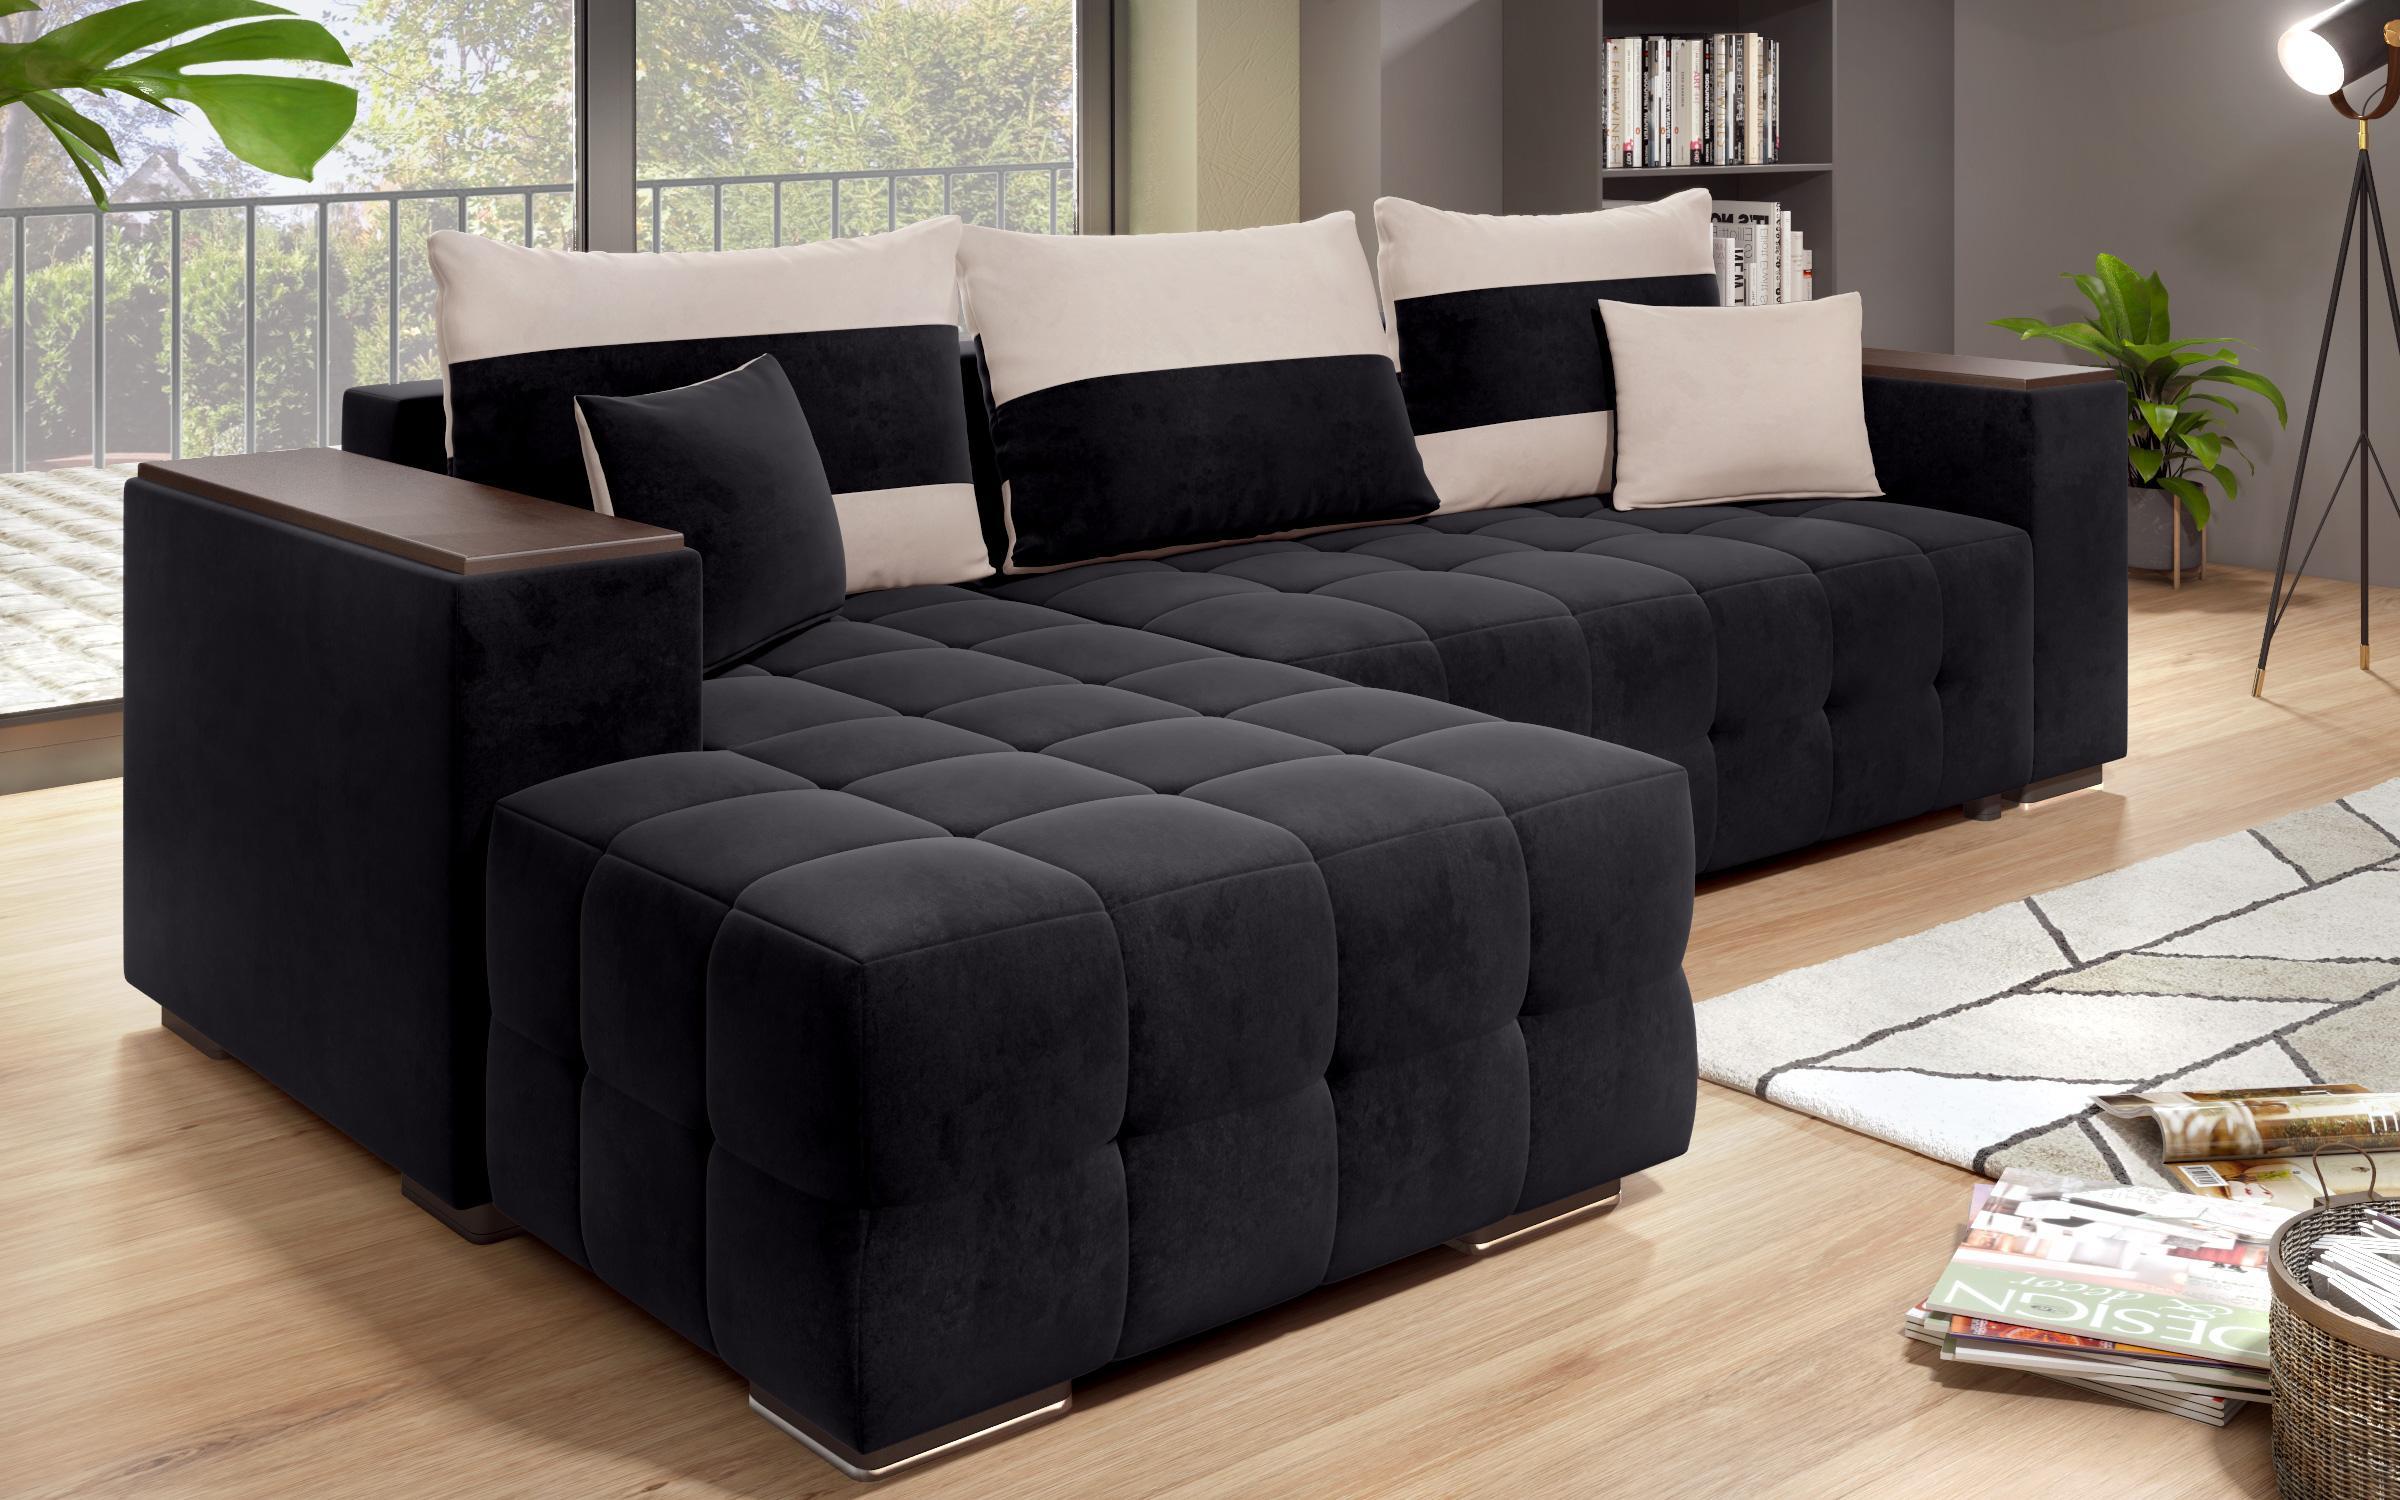 Γωνιακός καναπές - κρεβάτι με ανάκλιντρο και μπράτσο μίνι ραφιέρα Melvin S, μαύρο + ανοιχτό μπεζ  9